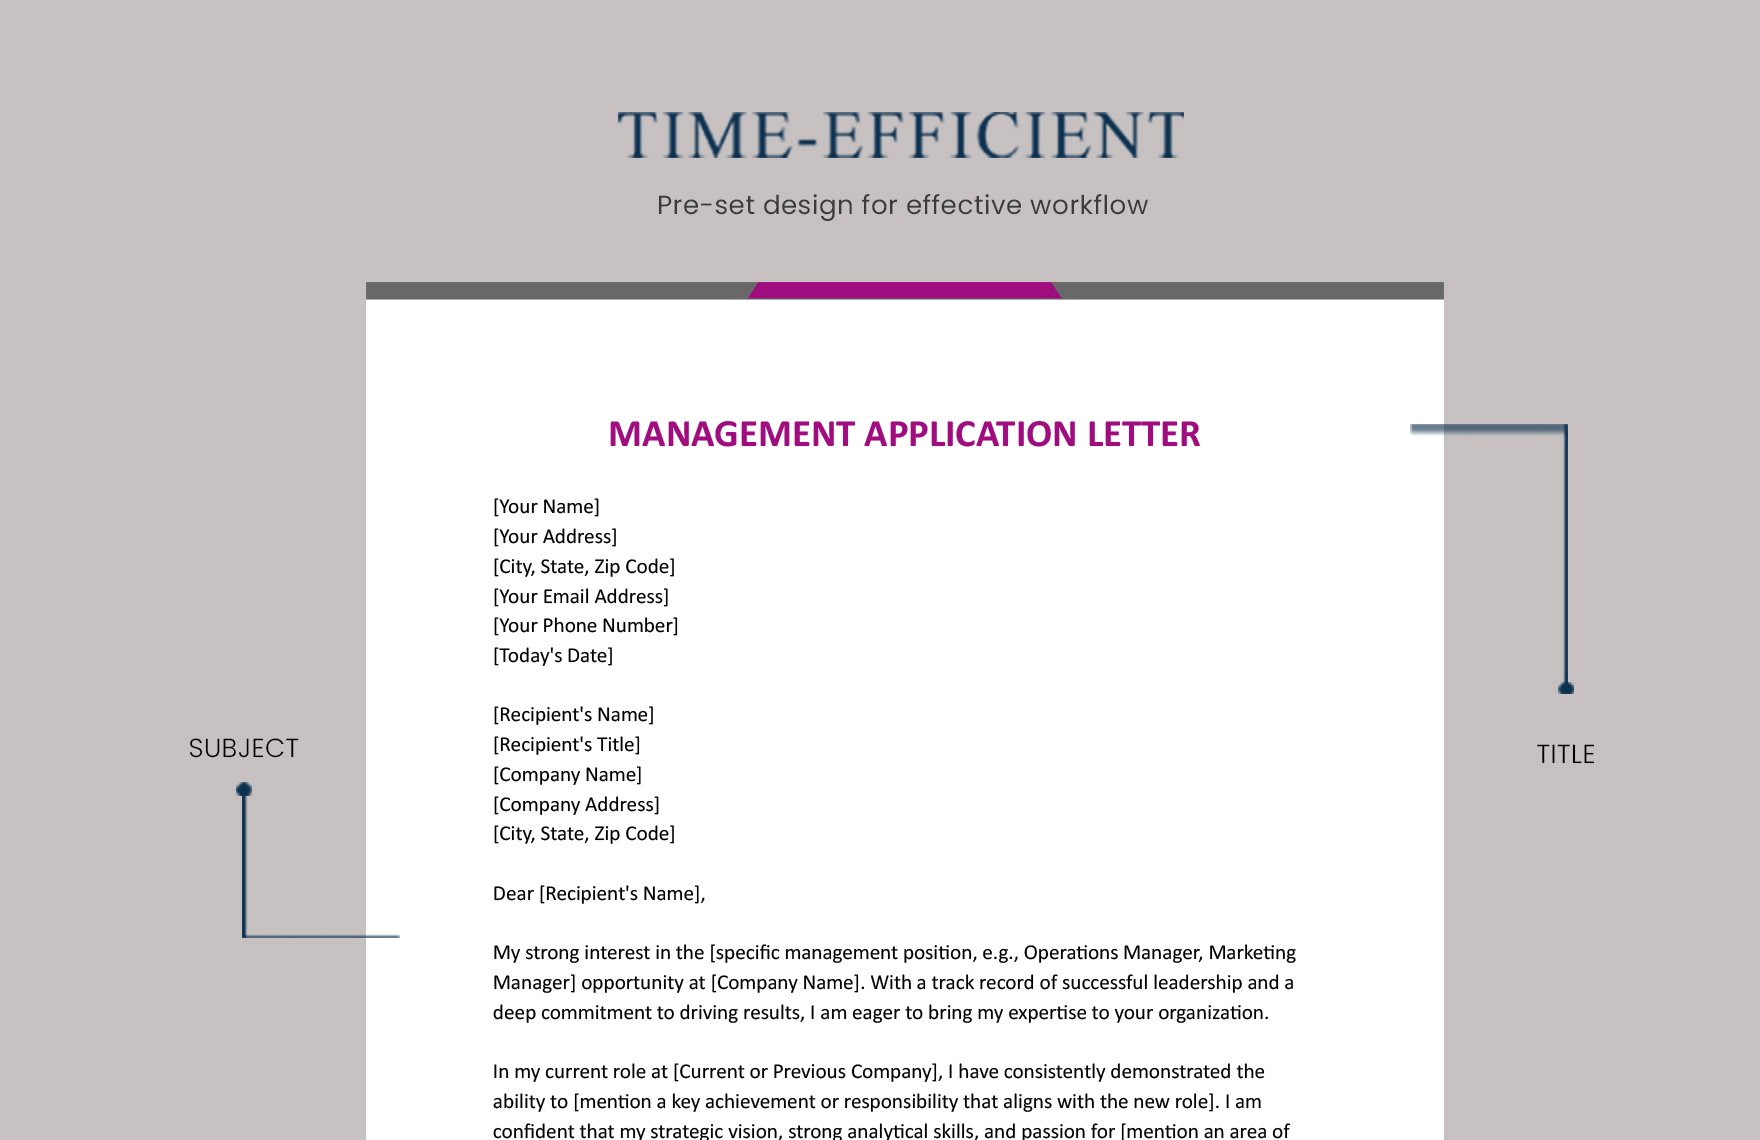 Management Application Letter